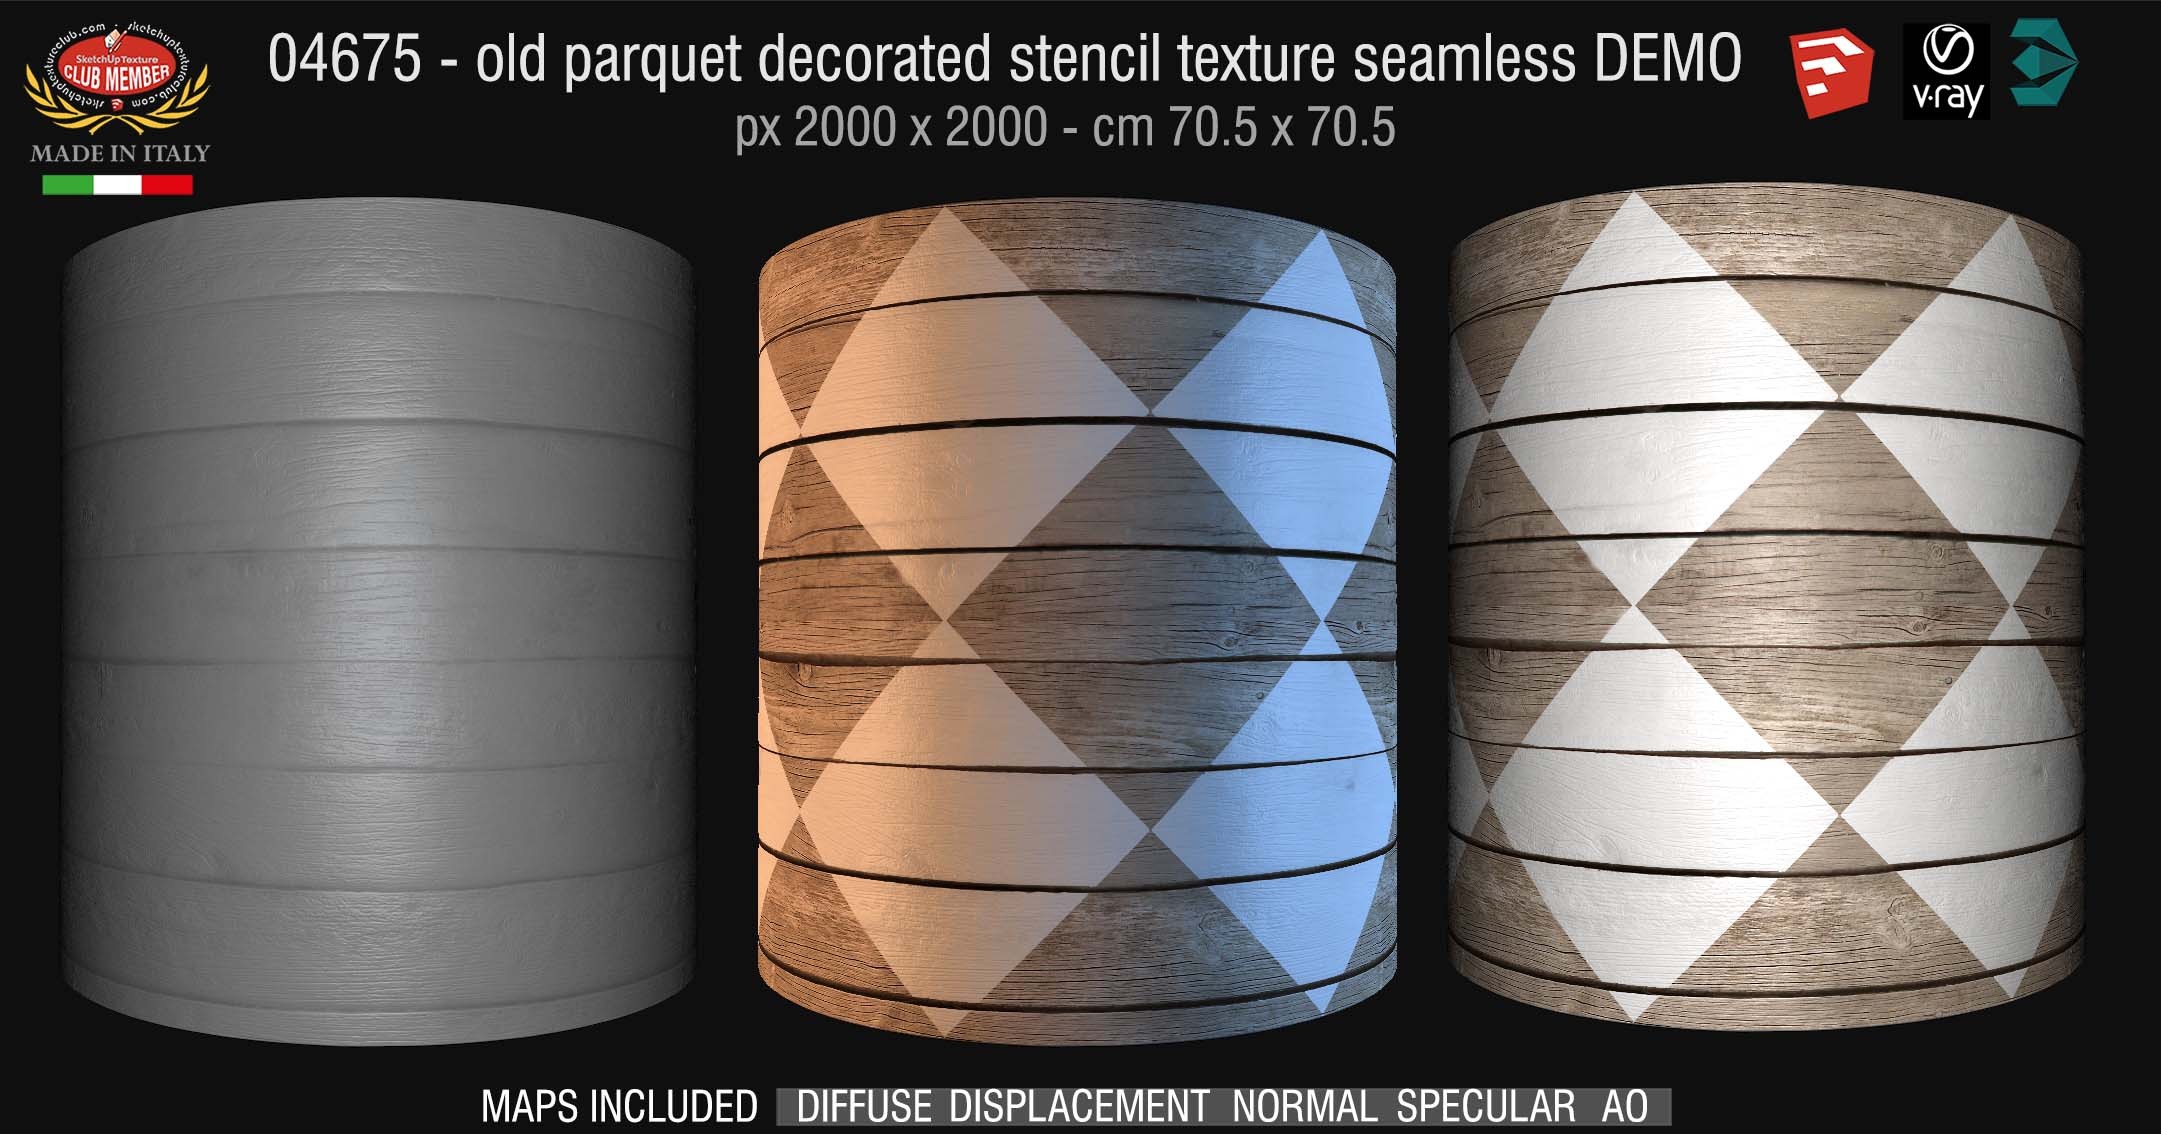 04675 HR Parquet decorated stencil texture seamless + maps DEMO